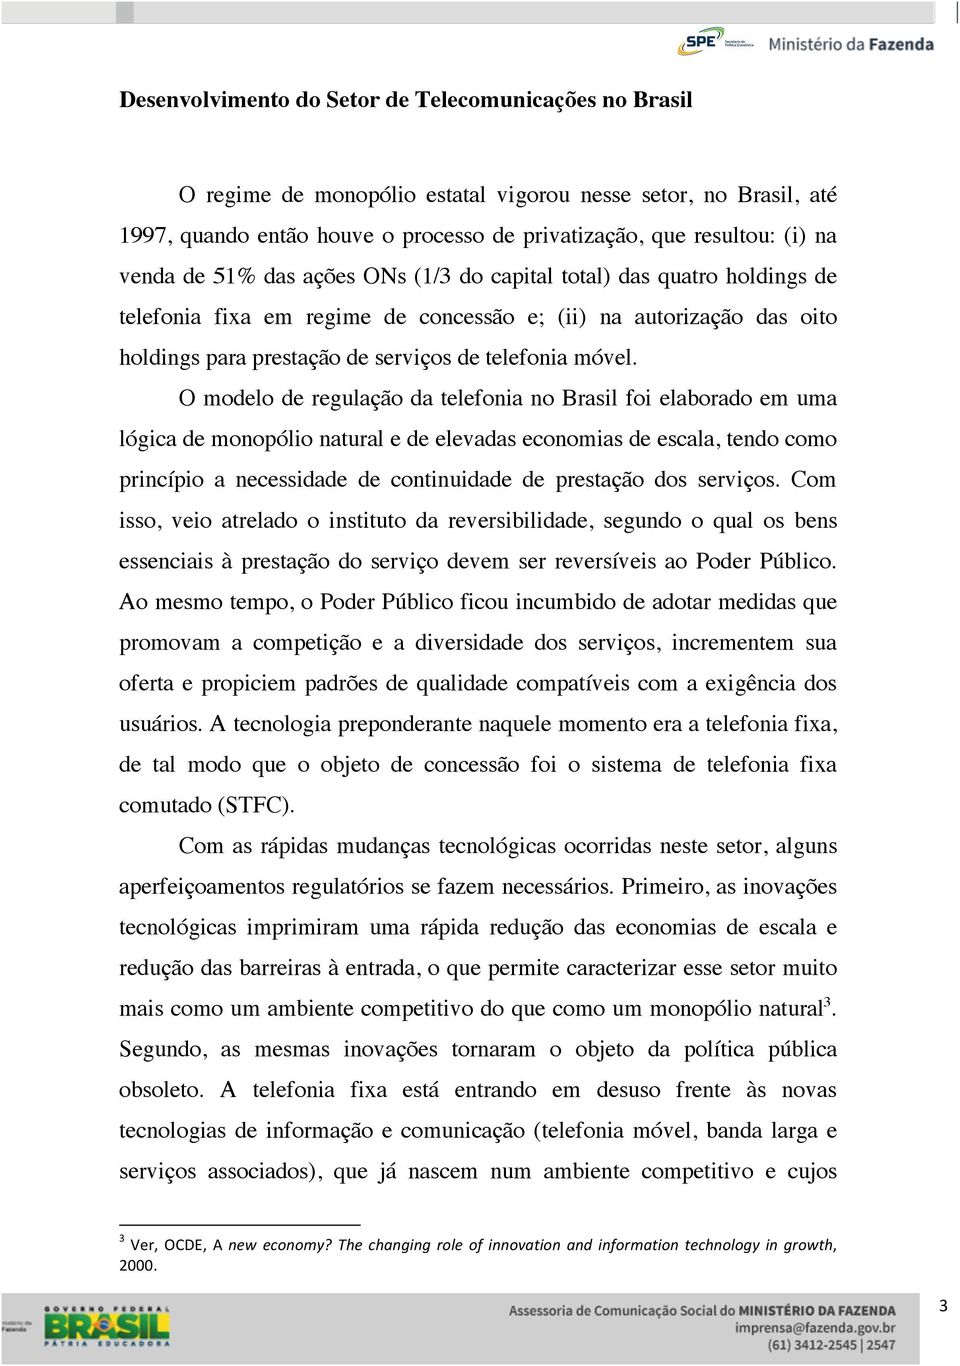 O modelo de regulação da telefonia no Brasil foi elaborado em uma lógica de monopólio natural e de elevadas economias de escala, tendo como princípio a necessidade de continuidade de prestação dos